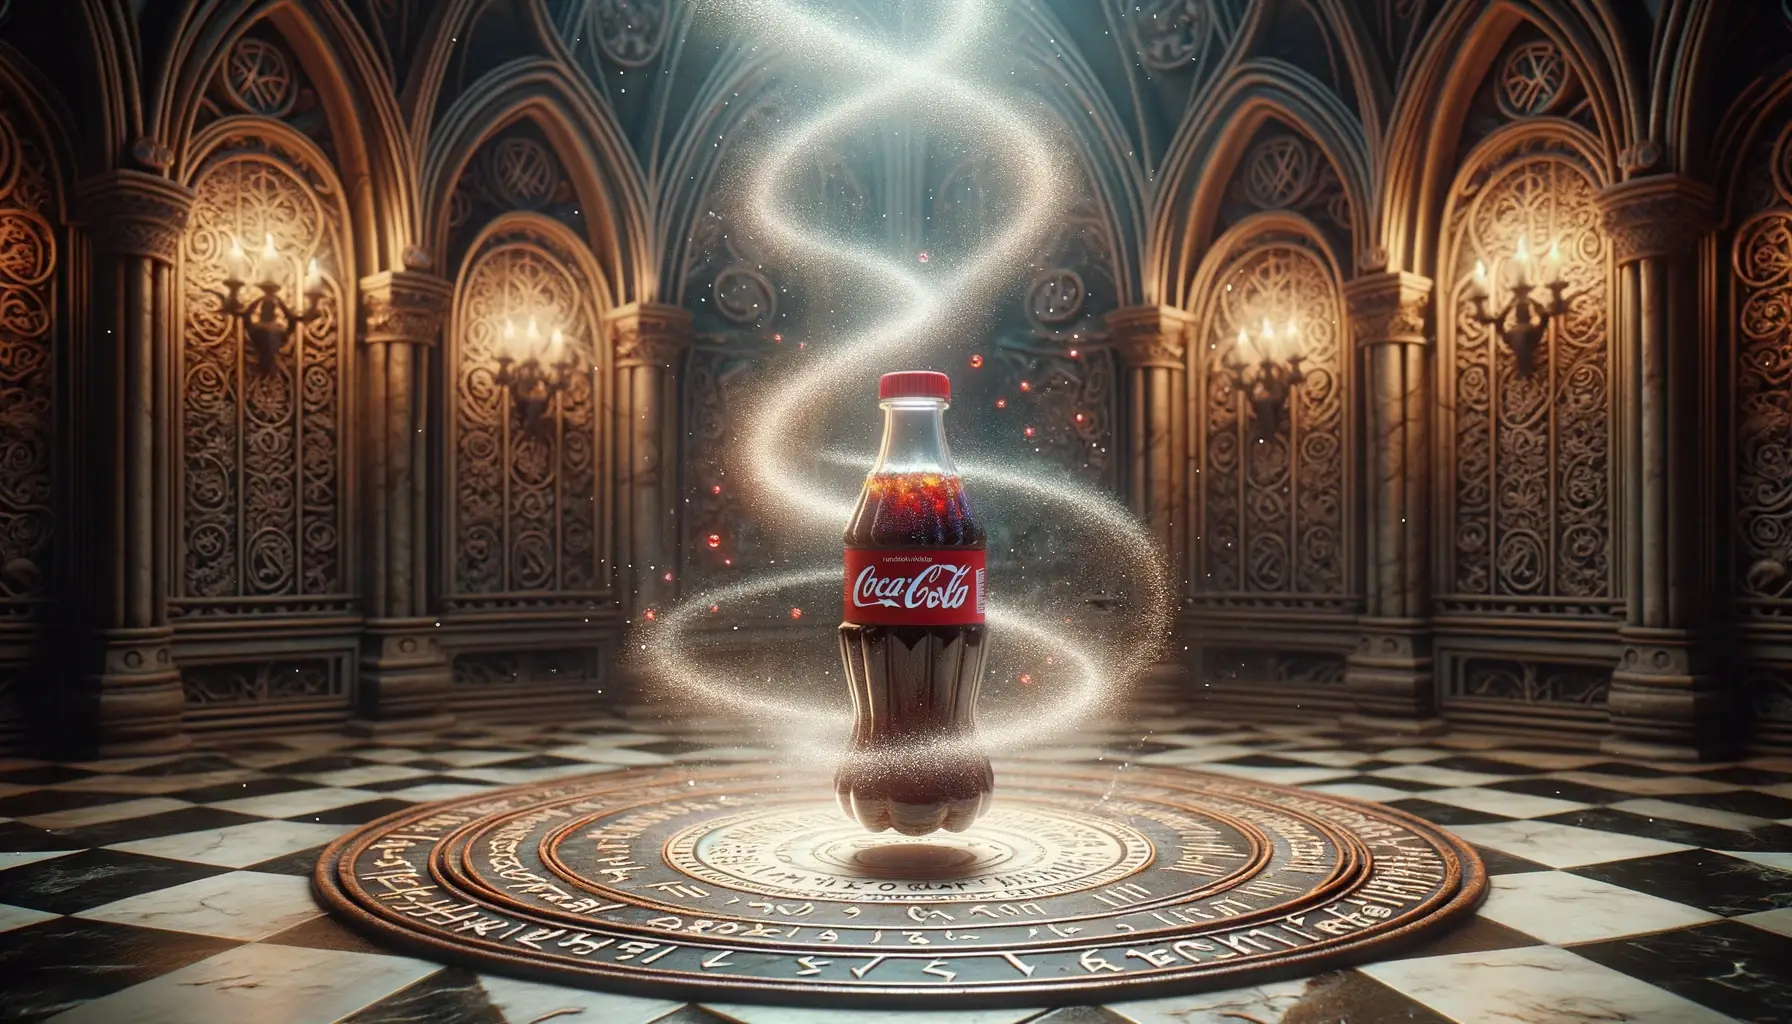 Coca-Cola sympathy